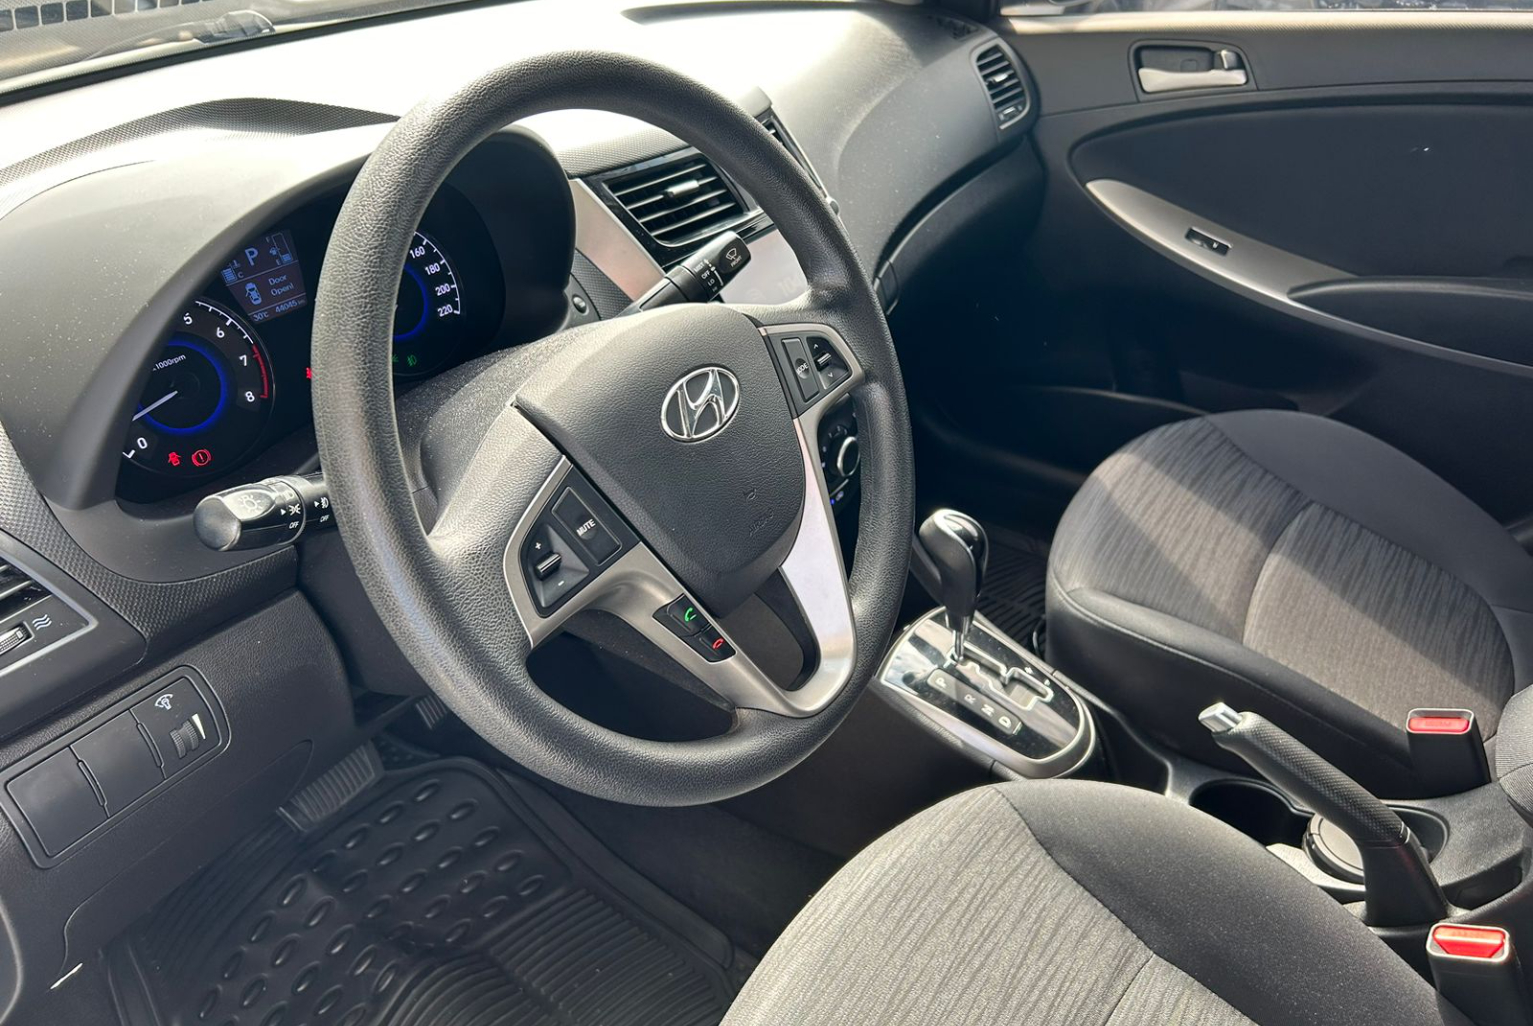 Hyundai Accent 2019 Automático color Plateado, Imagen #7